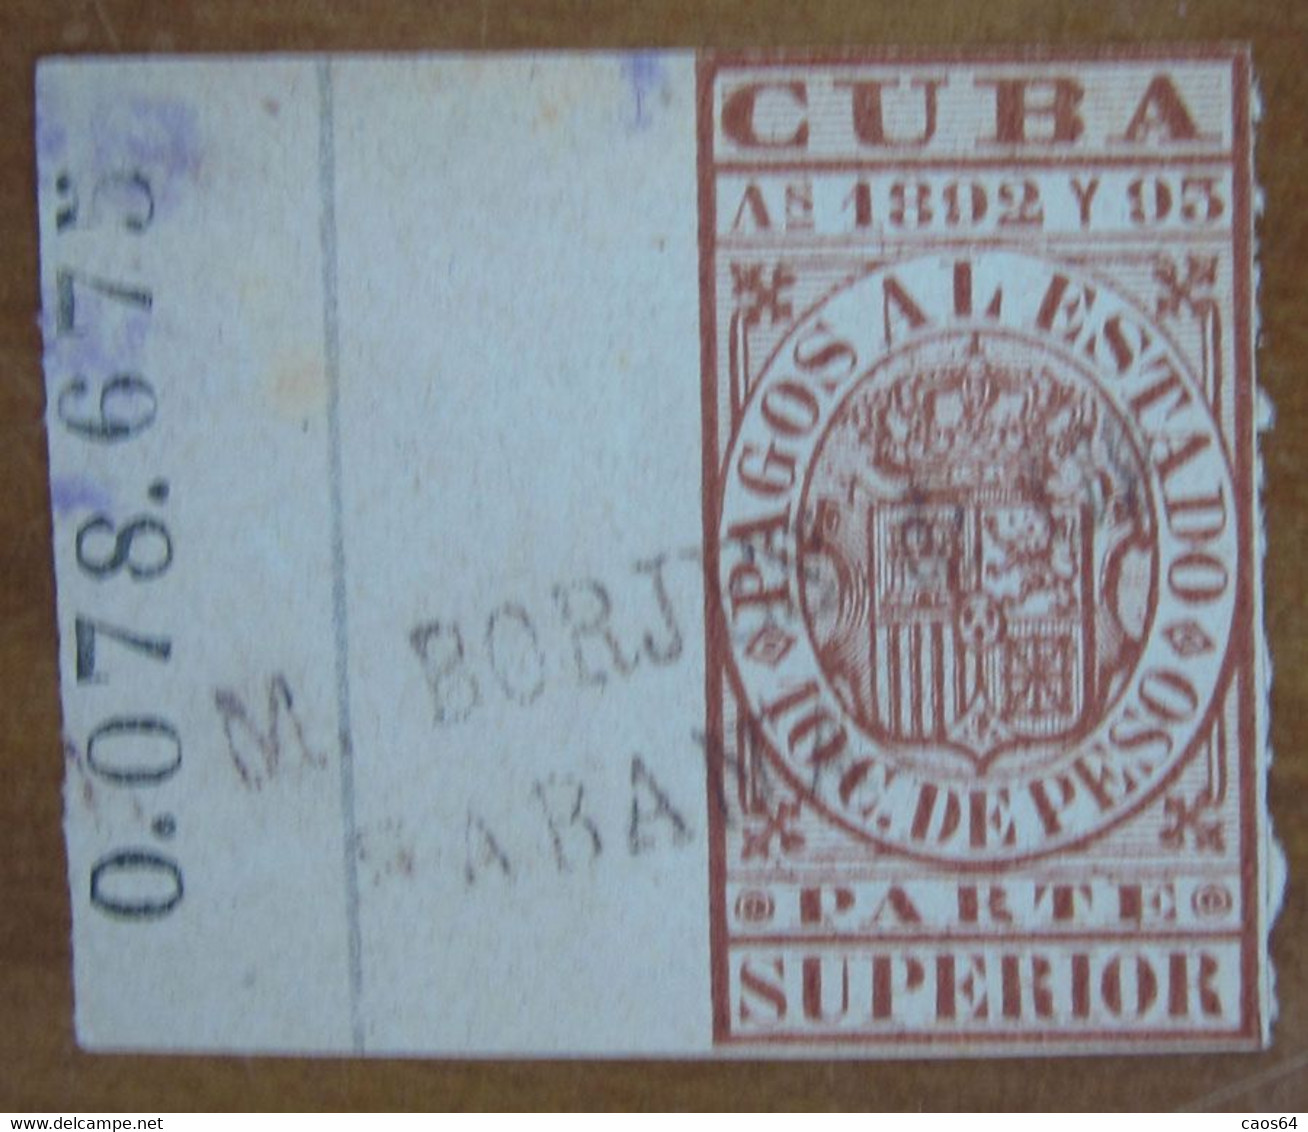 1892 1893 CUBA Fiscali Revenue Tax Pagos Al Estado 10 Ctv Superior - Usato - Postage Due